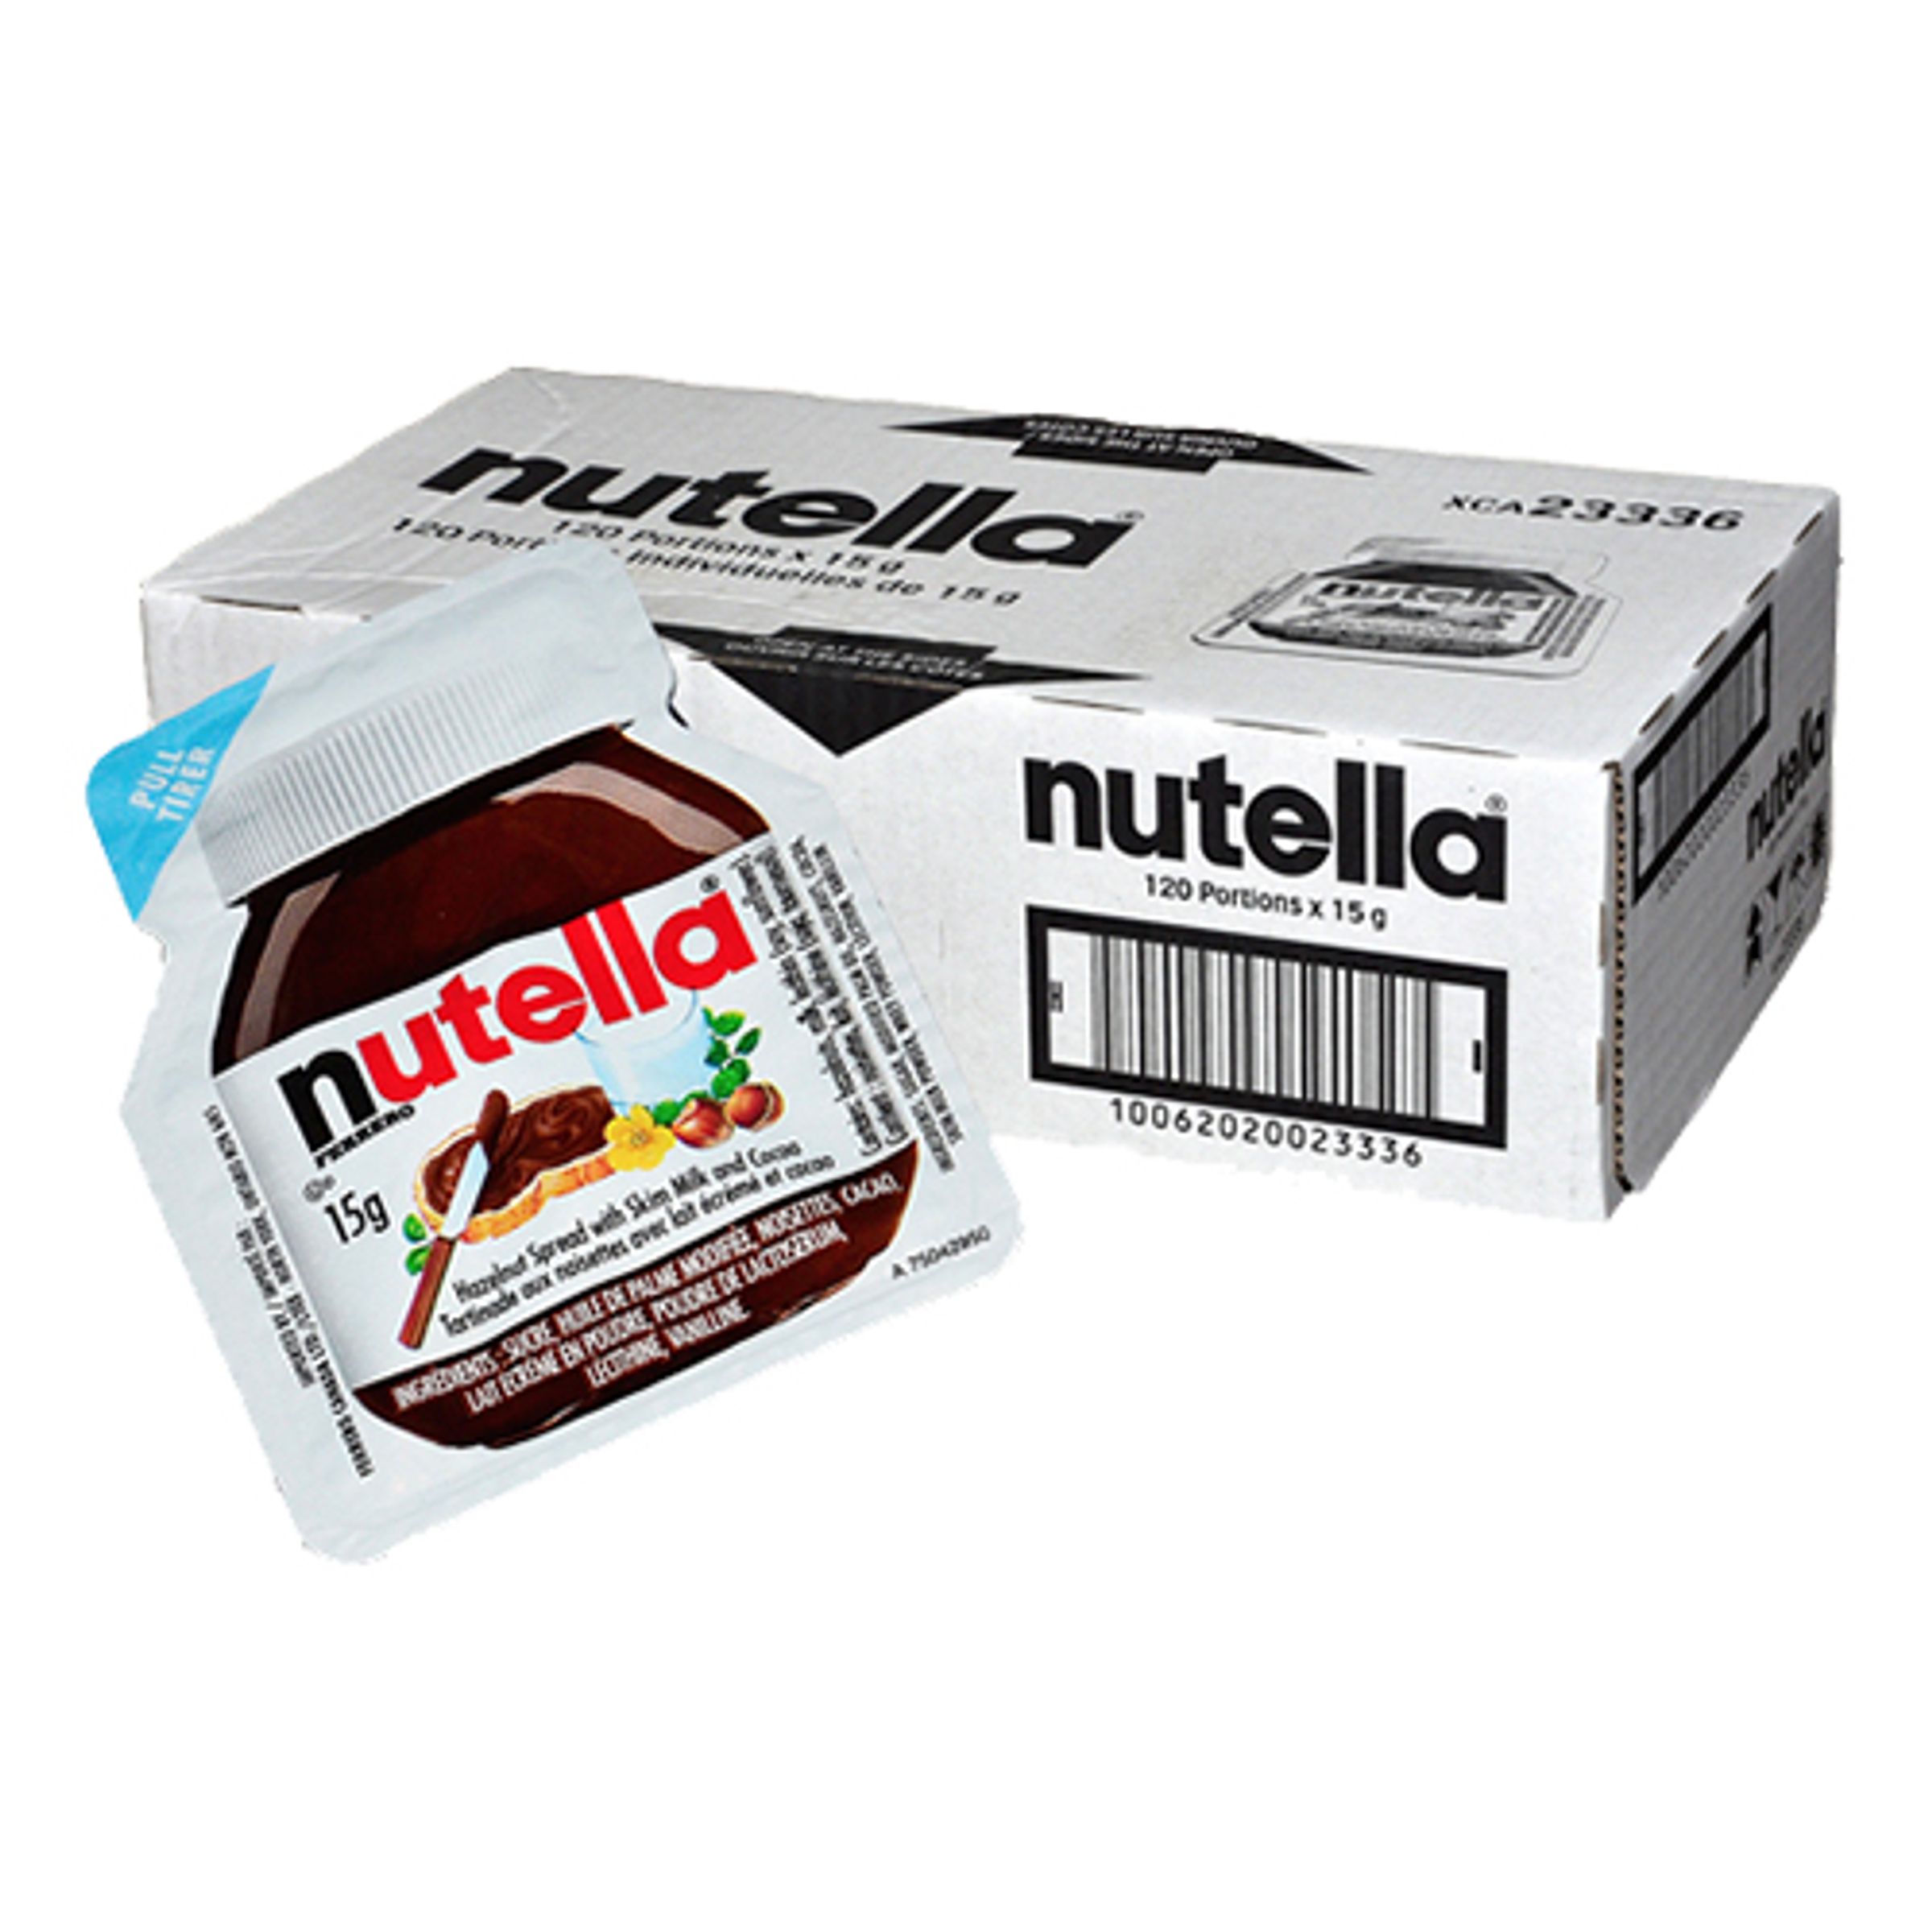 Nutella Portionsförpackning - 120-pack (Hel kartong)